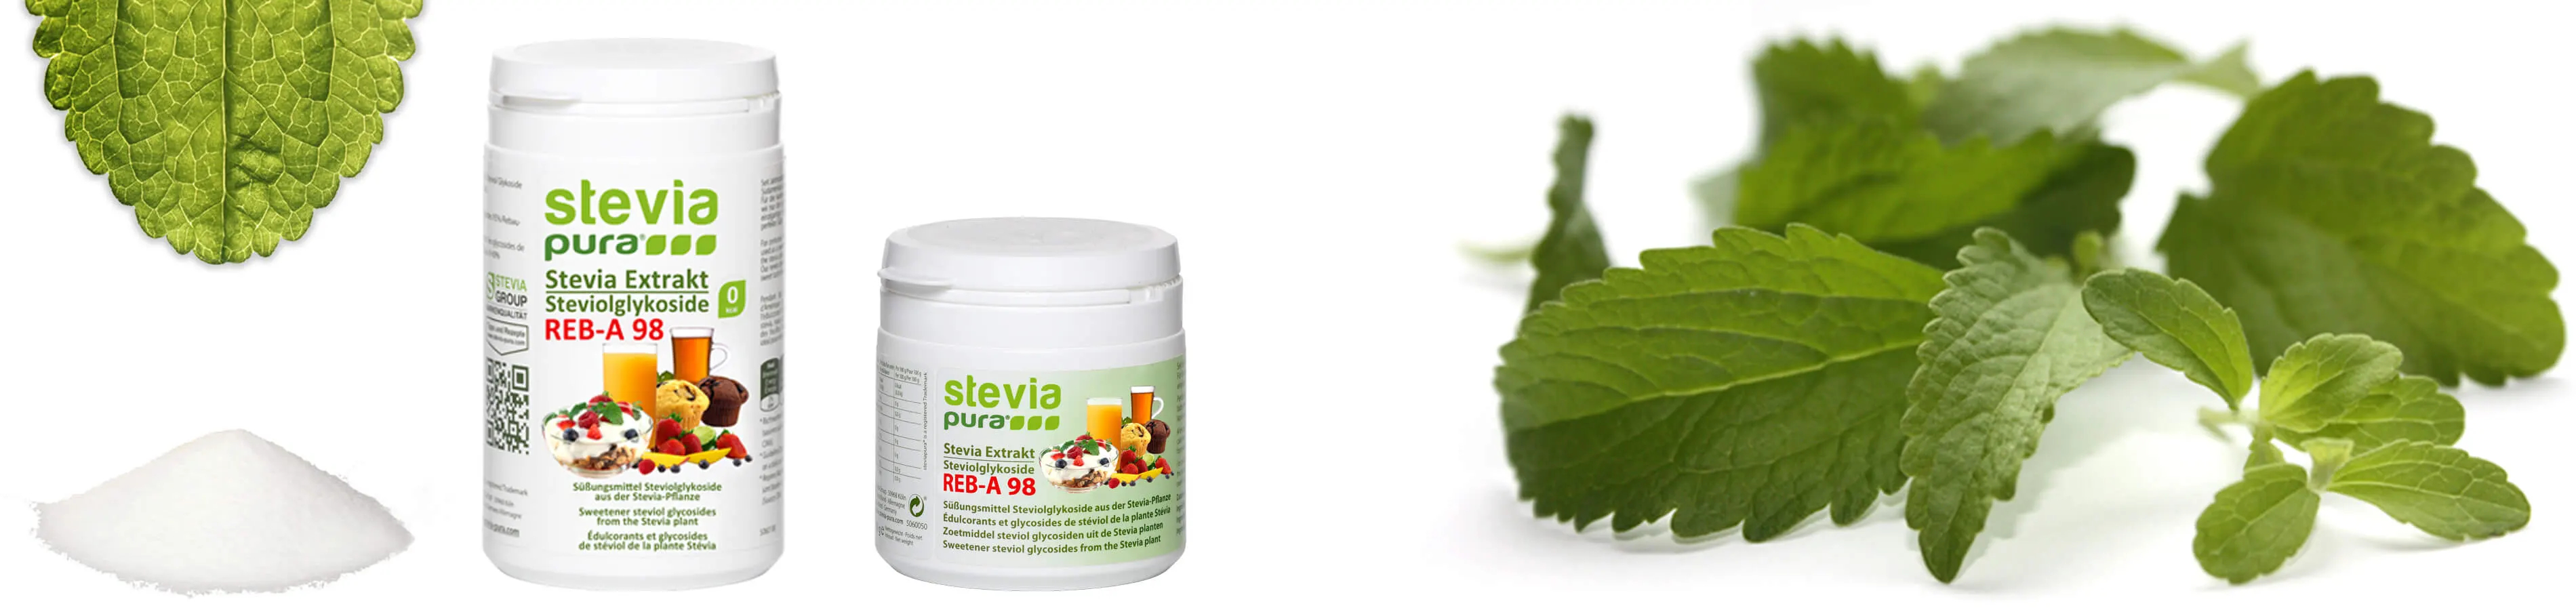 Les Glycosides de Stéviol  sont les substances sucrées contenues dans la plante Stévia. La poudre de Stévia pure est utilisée comme substitut du sucre ou comme Édulcorant.